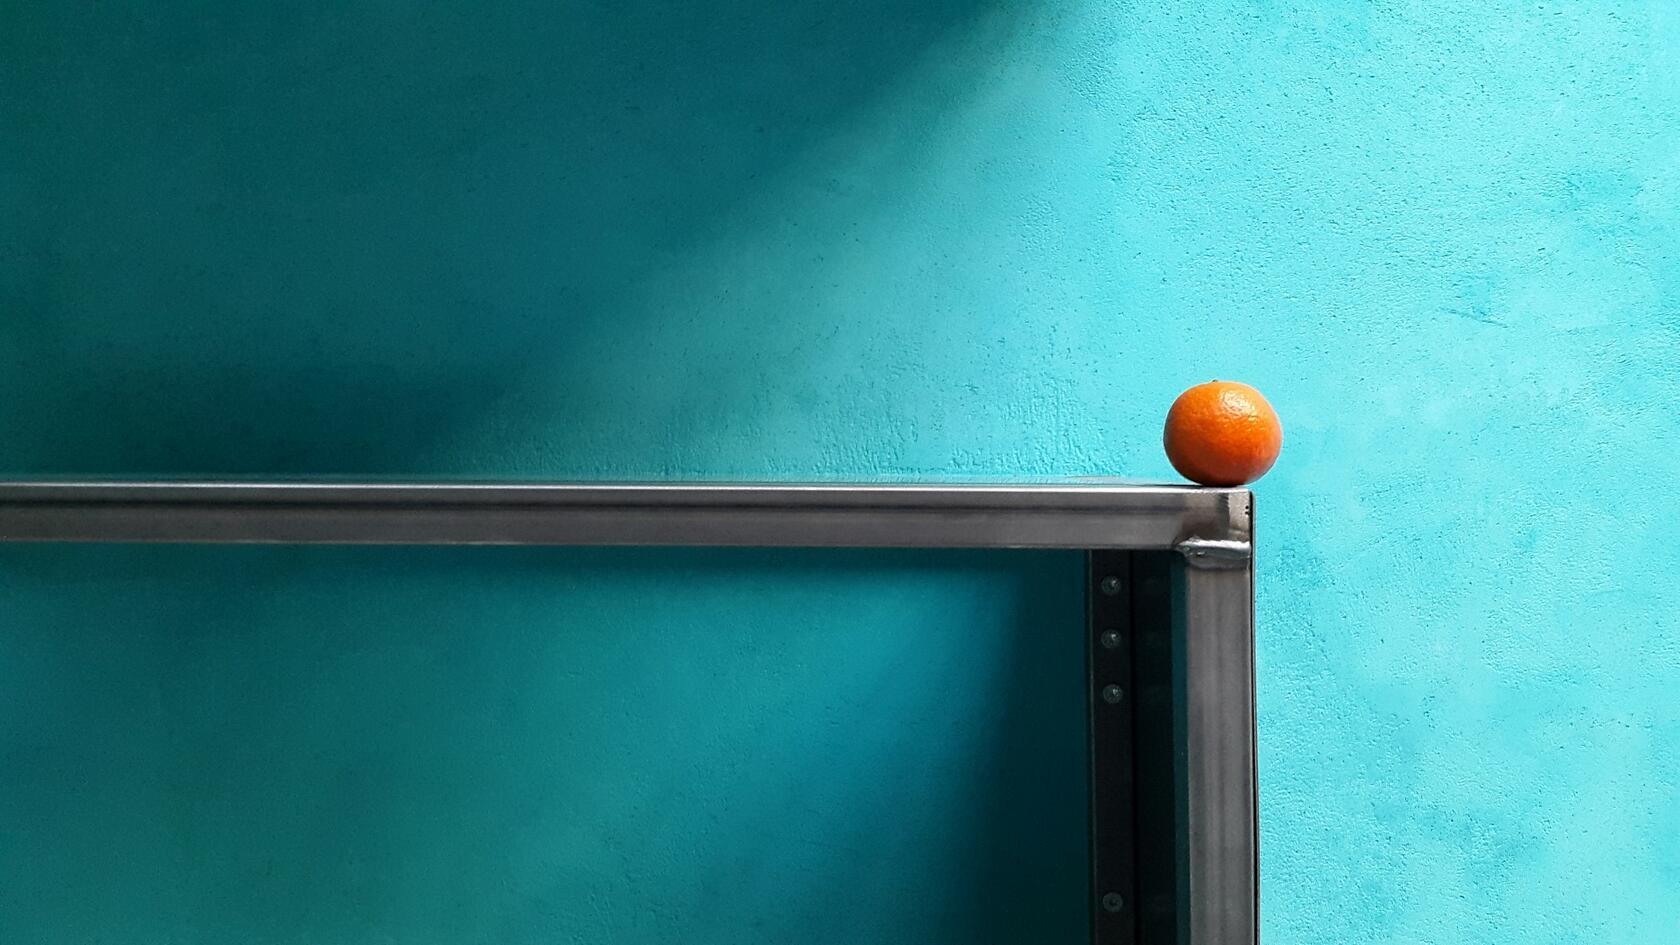 Chaux bleue au mur, orange posée sur une table en premier plan.